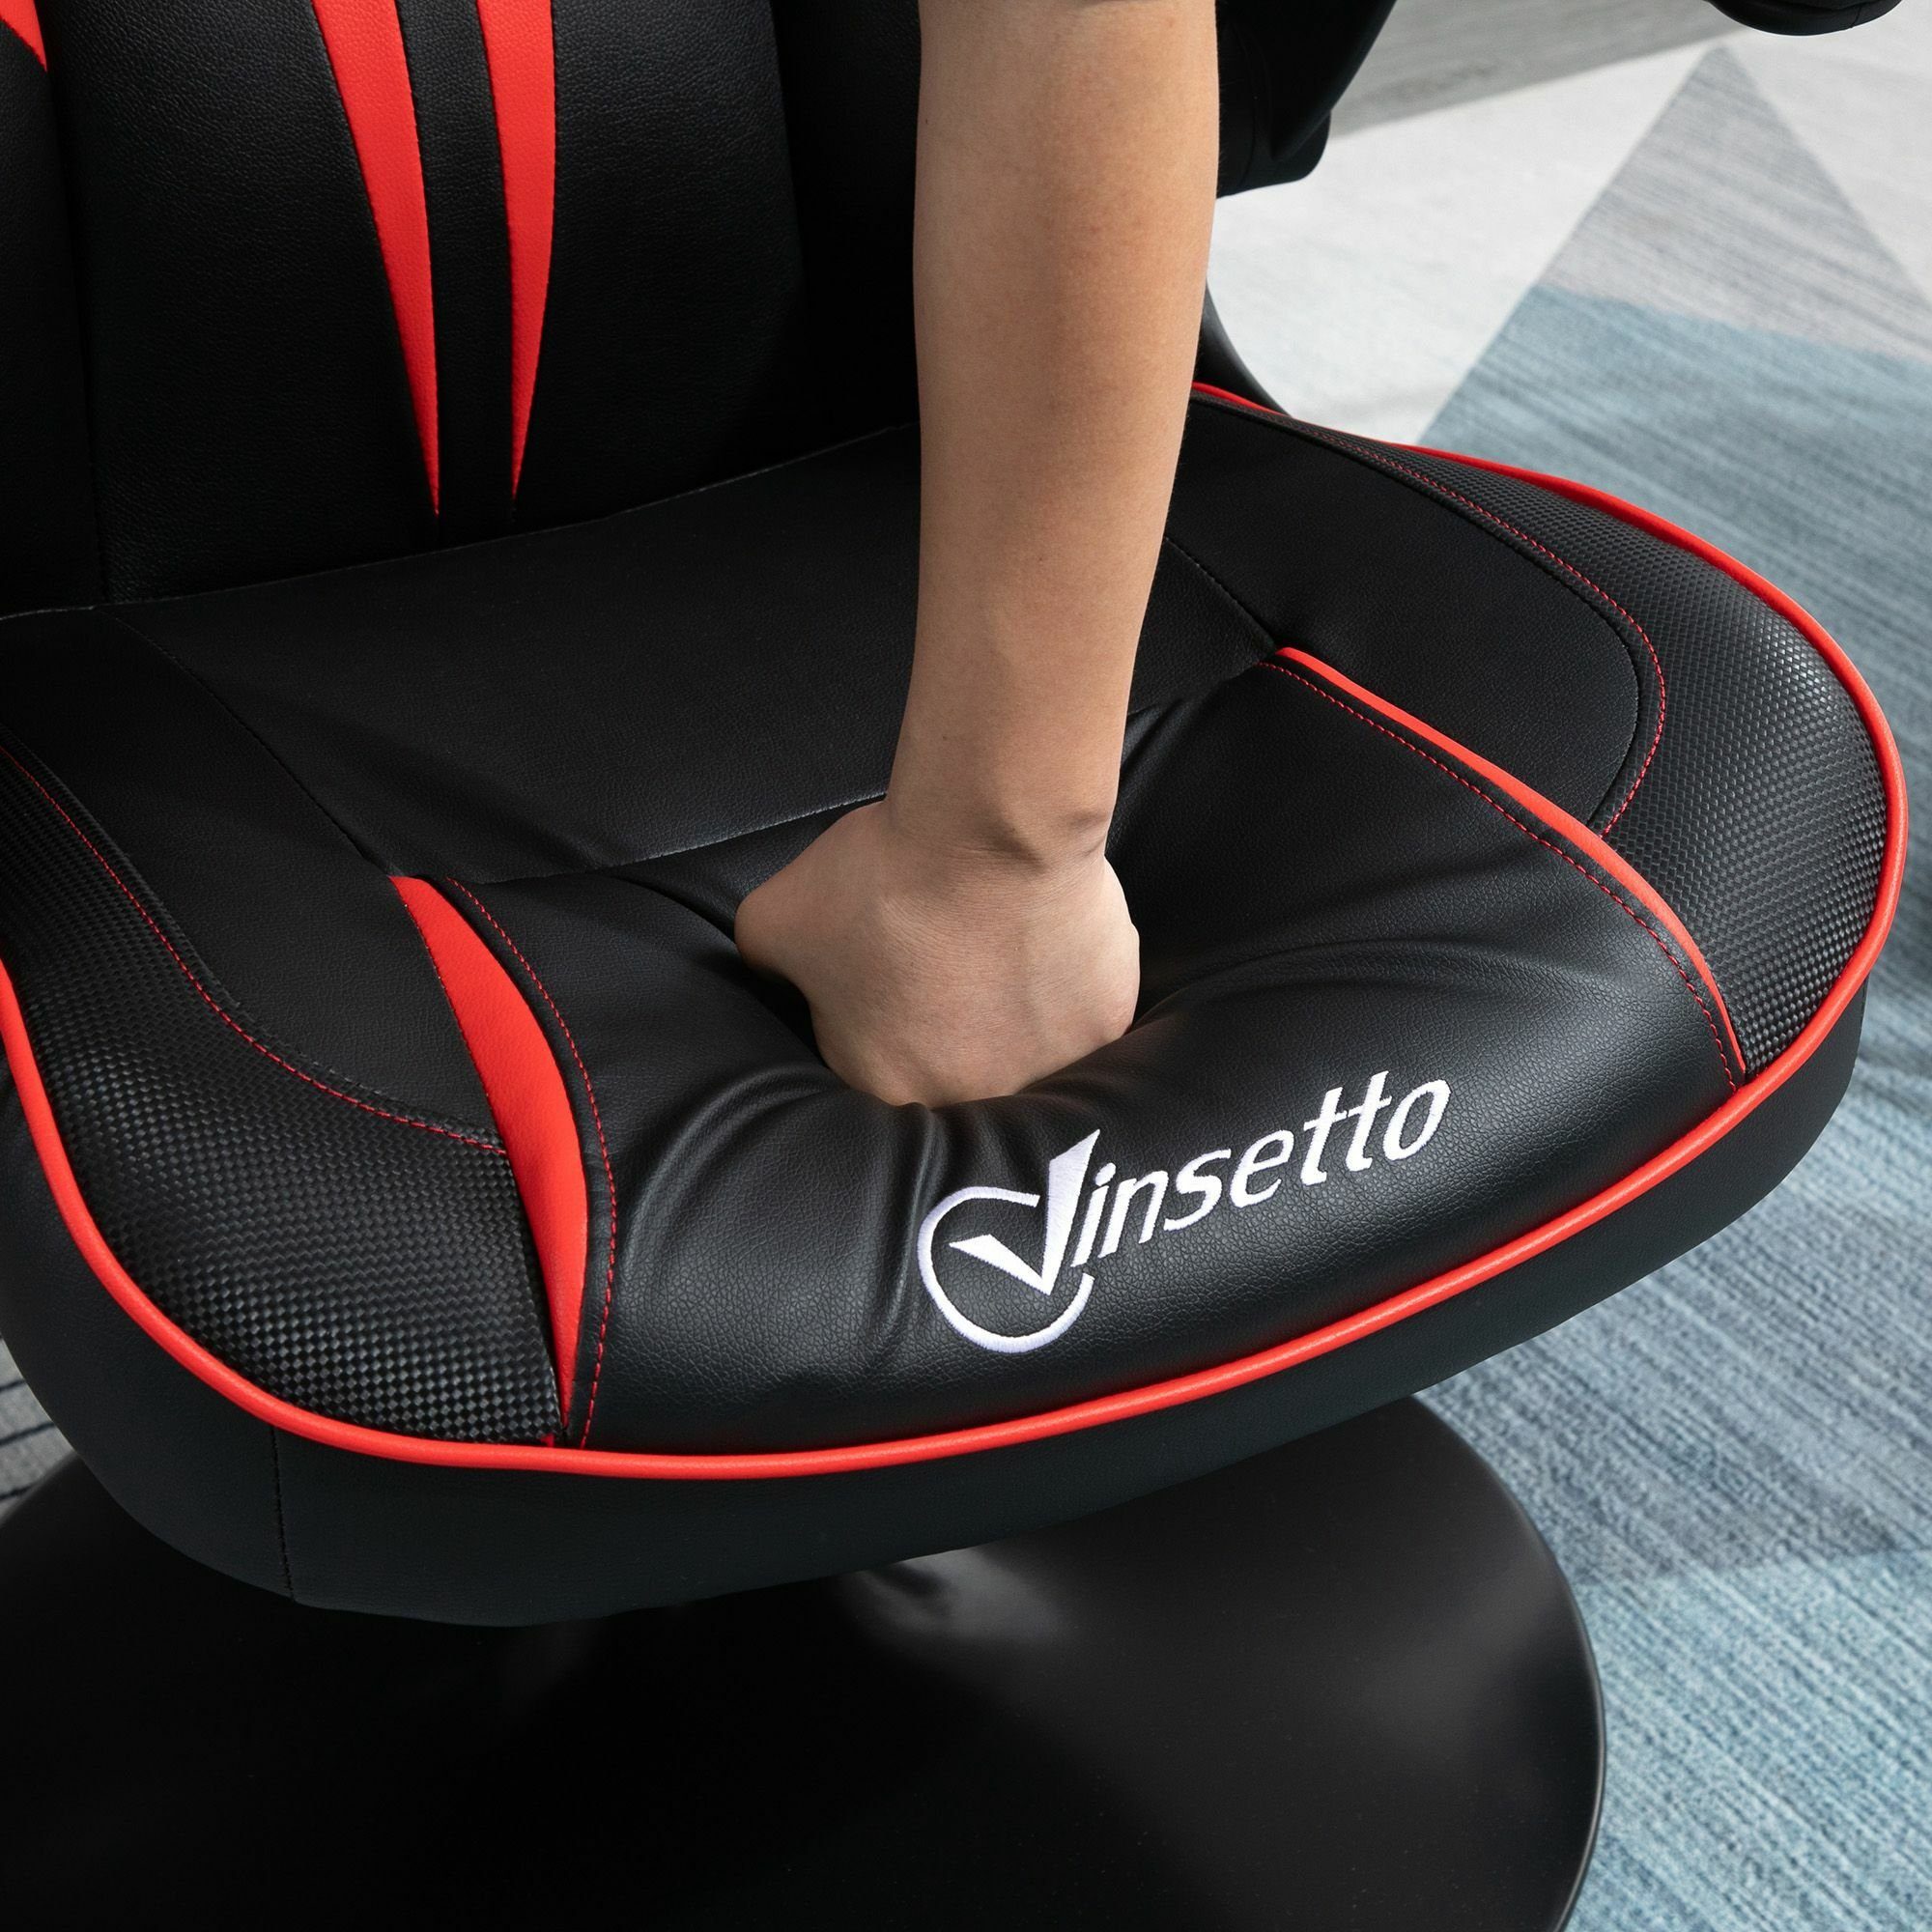 Schreibtischstuhl | ergonomisch Gaming Stuhl Vinsetto schwarz/rot schwarz/rot